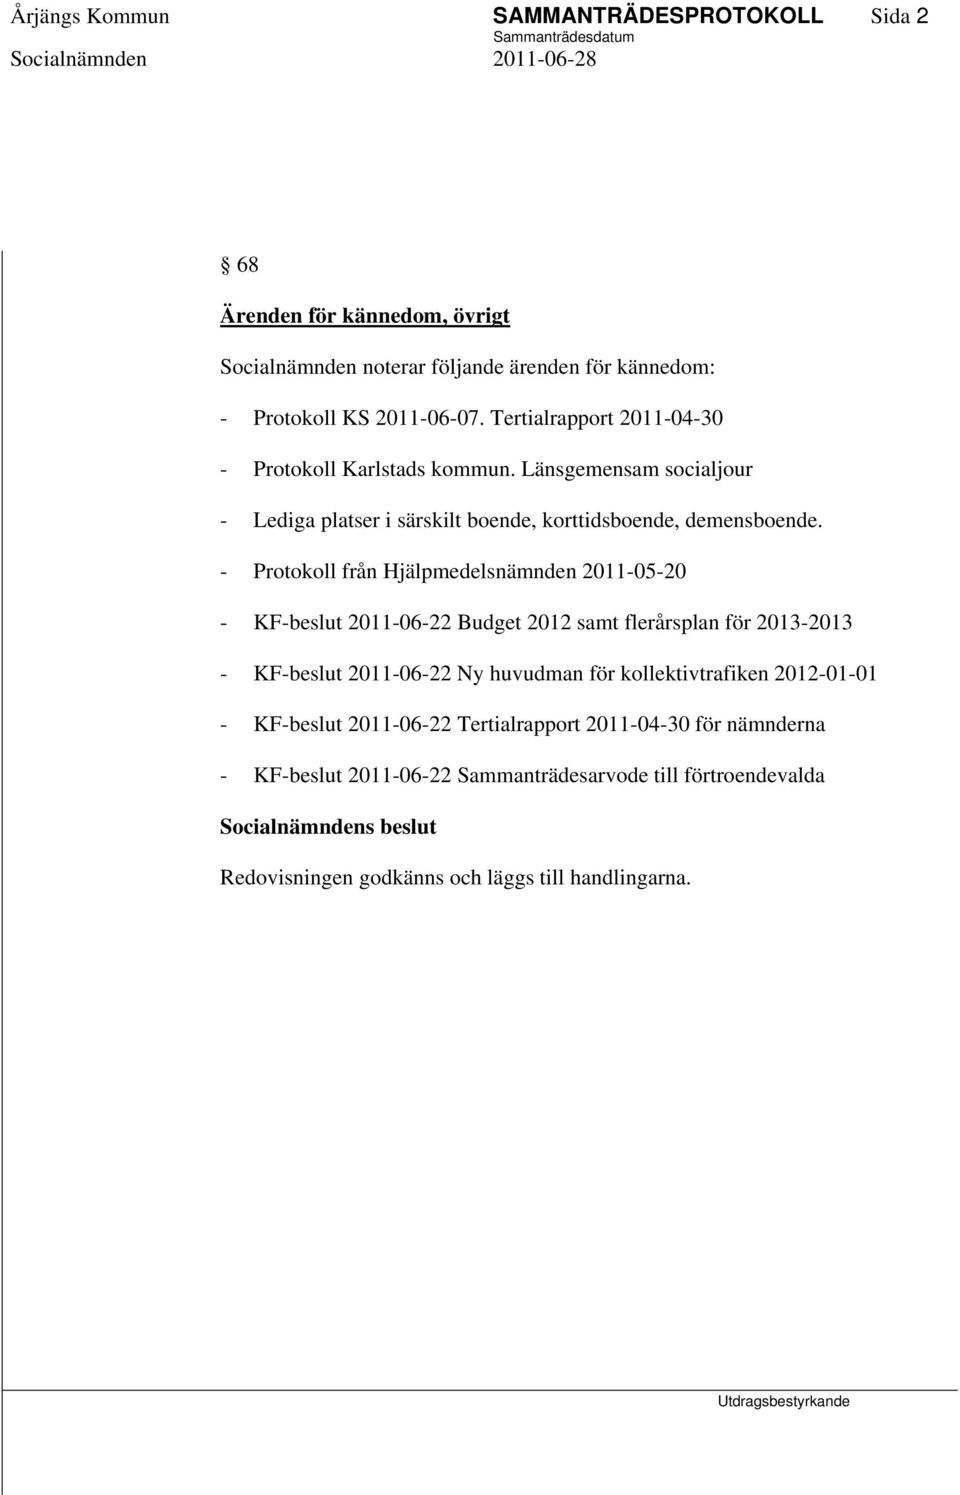 - Protokoll från Hjälpmedelsnämnden 2011-05-20 - KF-beslut 2011-06-22 Budget 2012 samt flerårsplan för 2013-2013 - KF-beslut 2011-06-22 Ny huvudman för